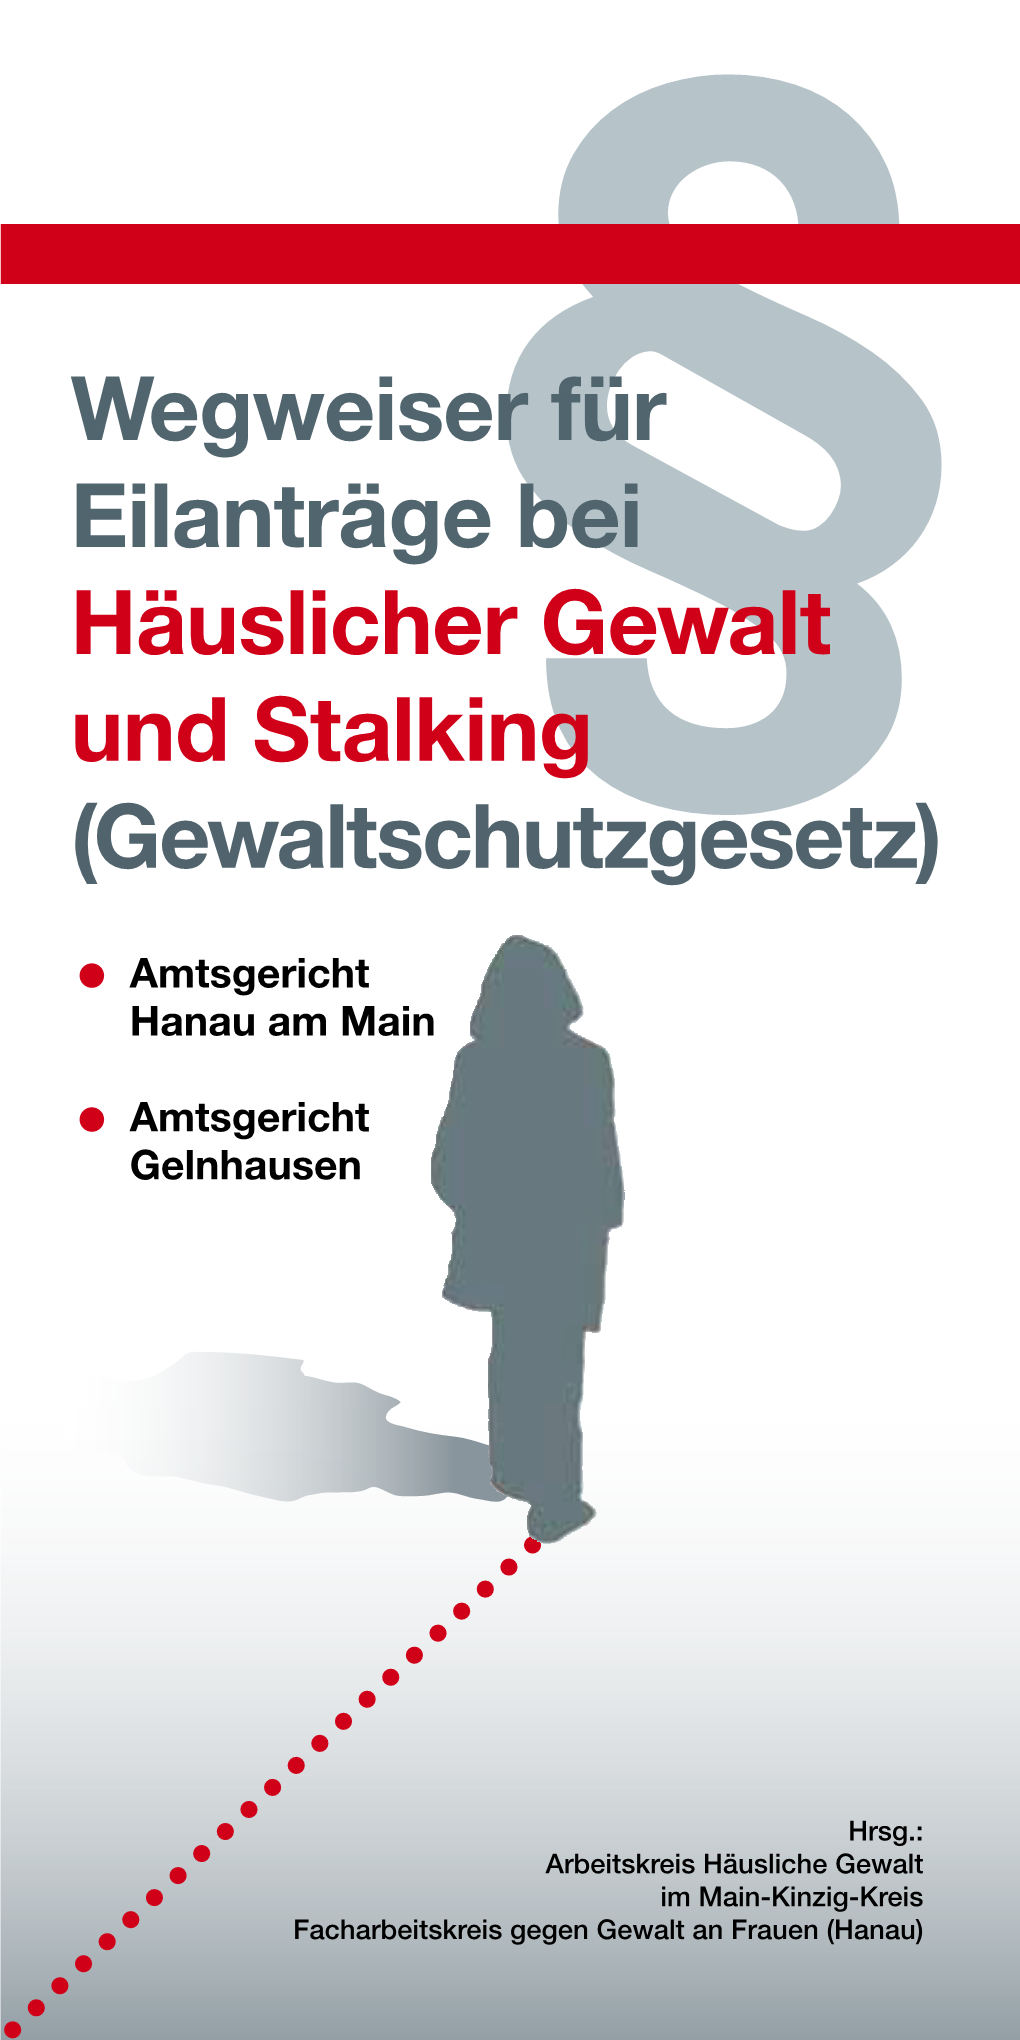 Wegweiser Für Eilanträge Bei Häuslicher Gewalt Und Stalking§ (Gewaltschutzgesetz)